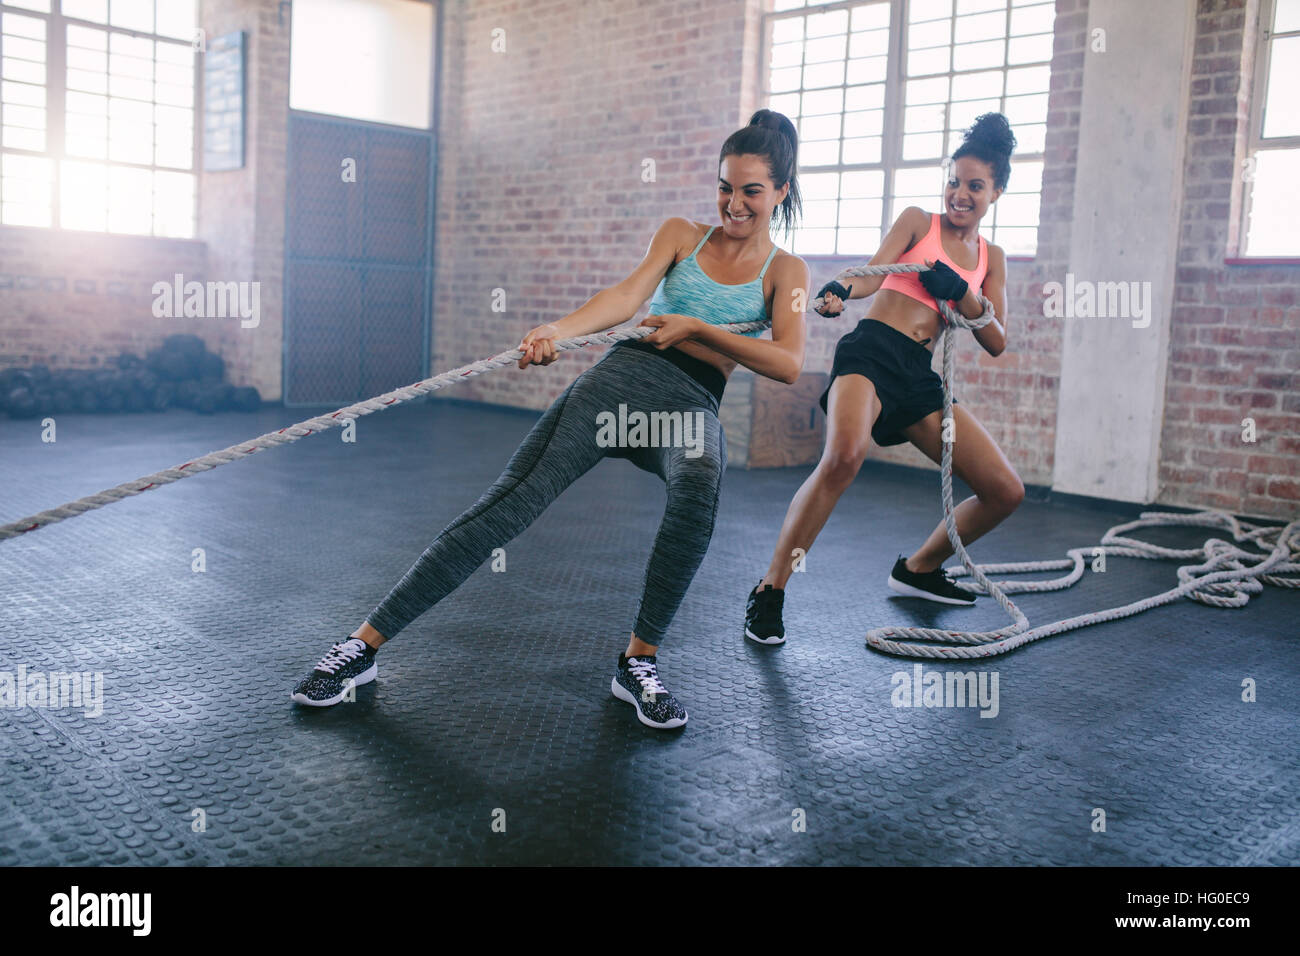 Aufnahme von zwei starke junge Frauen tun, Seil ziehen Übungen in einem Fitnessstudio. Fitness Frauen ziehen Seil in Turnhalle und lächelnd. Stockfoto